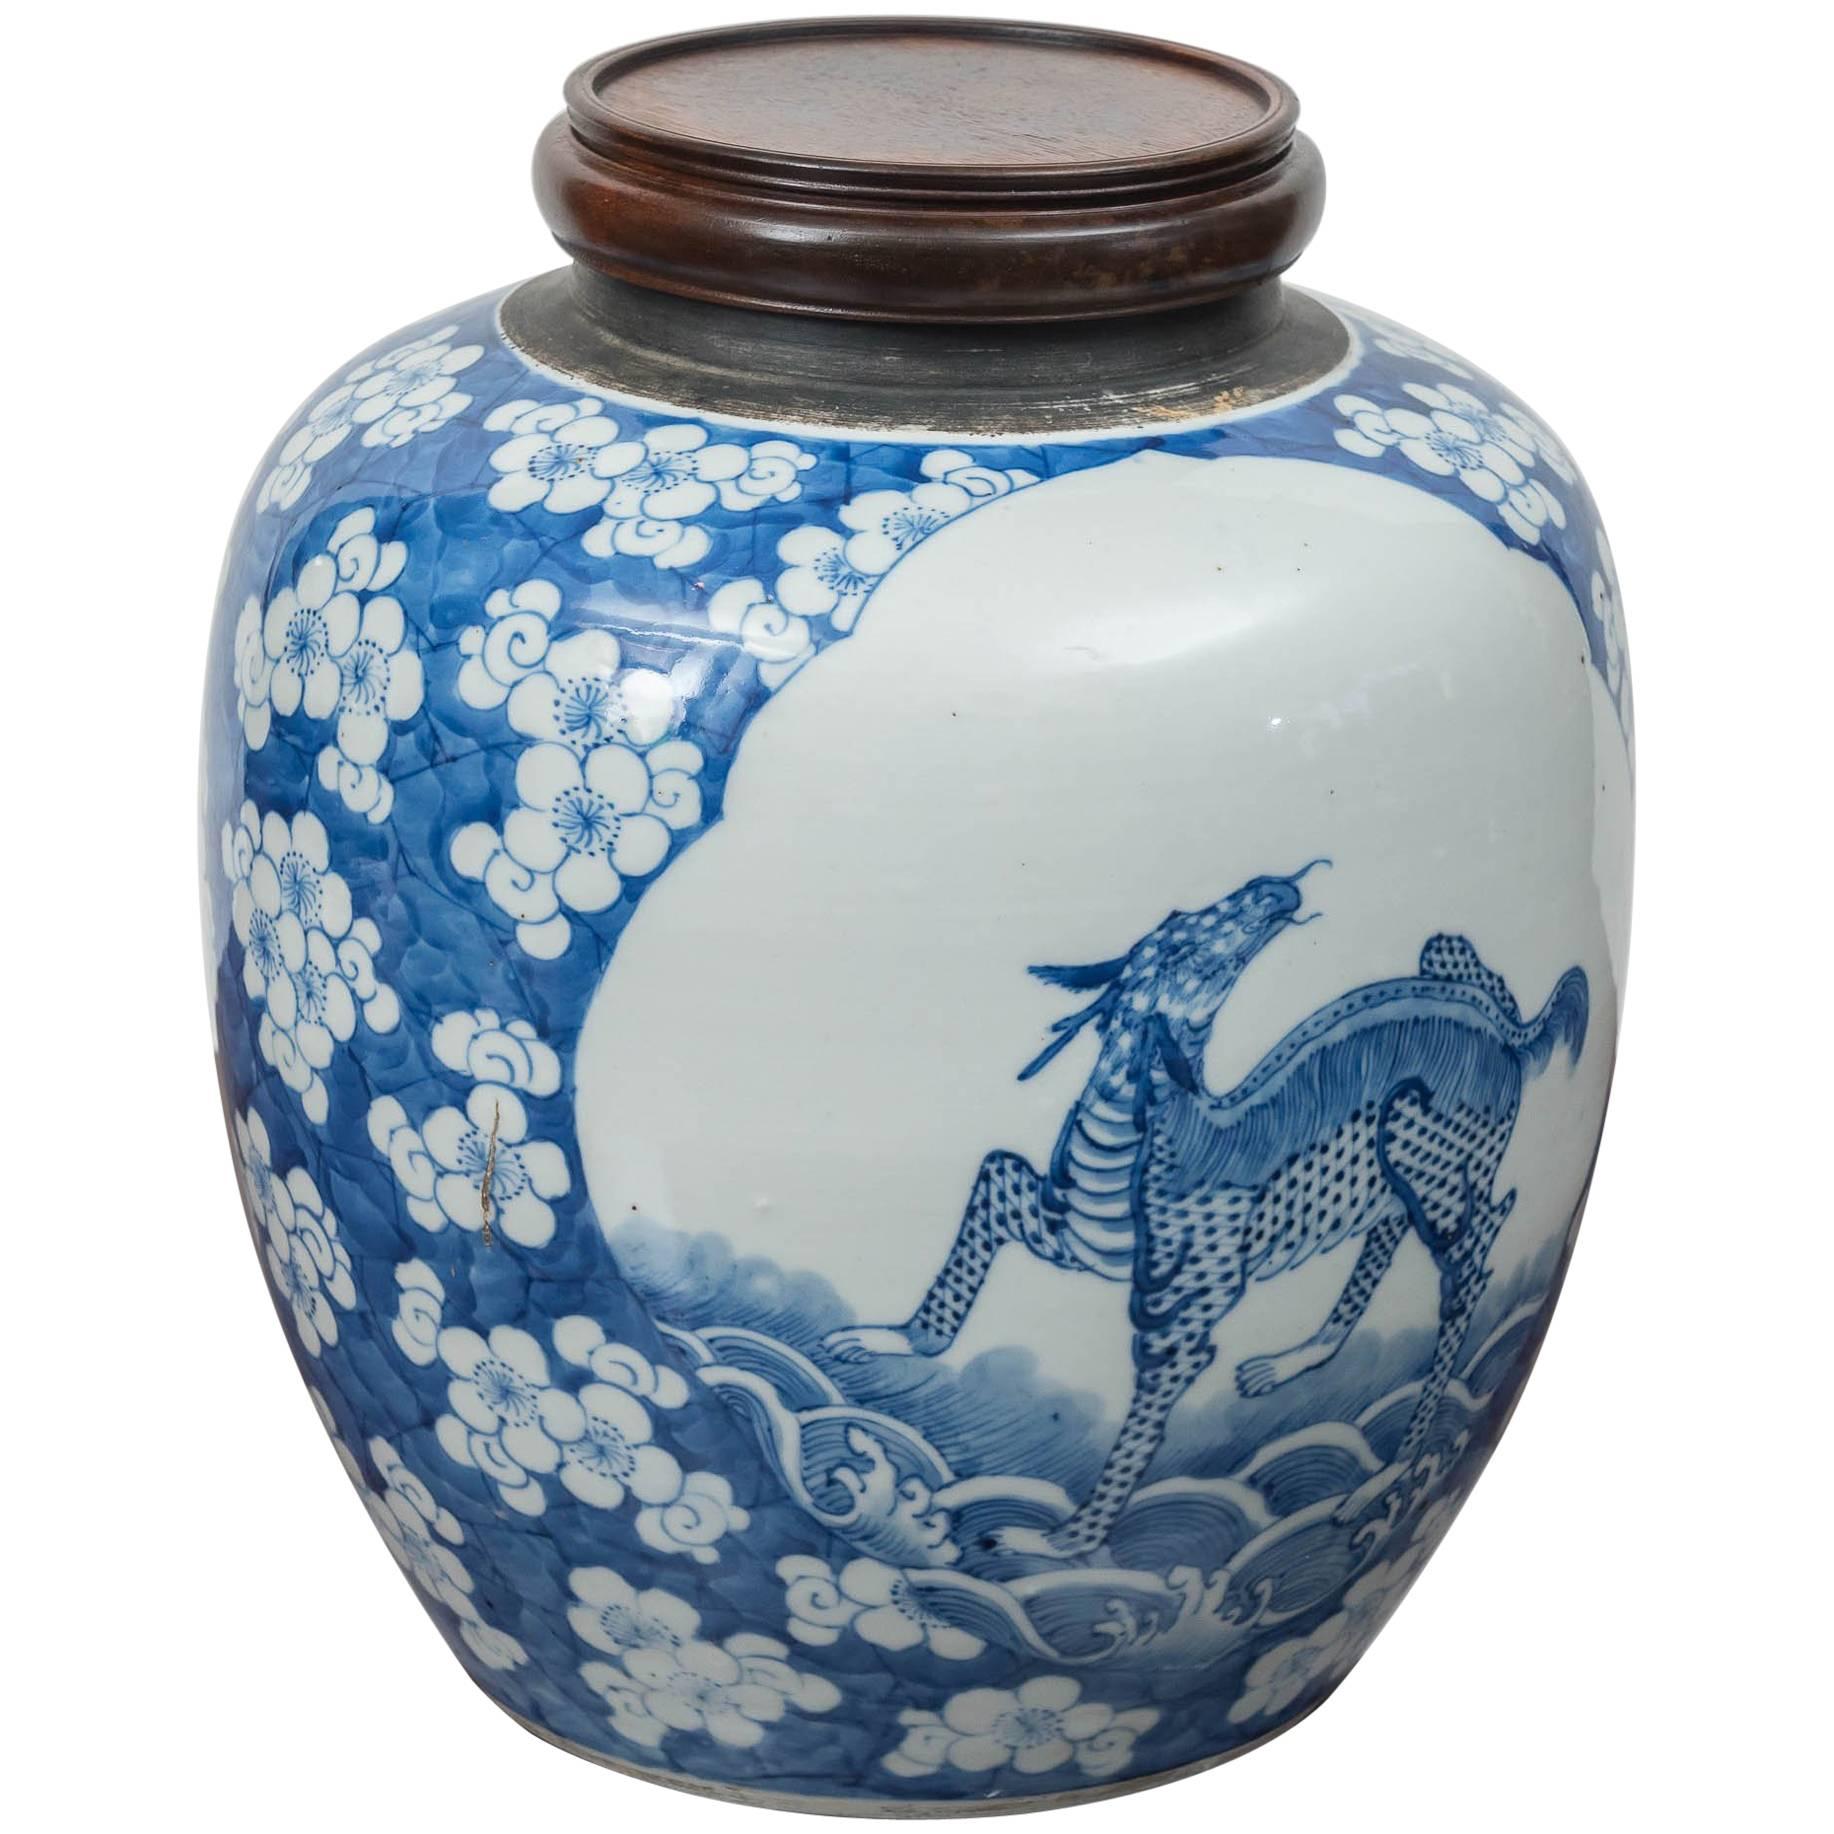 K'ang Hsi Style Blue and White Jar, circa 1880